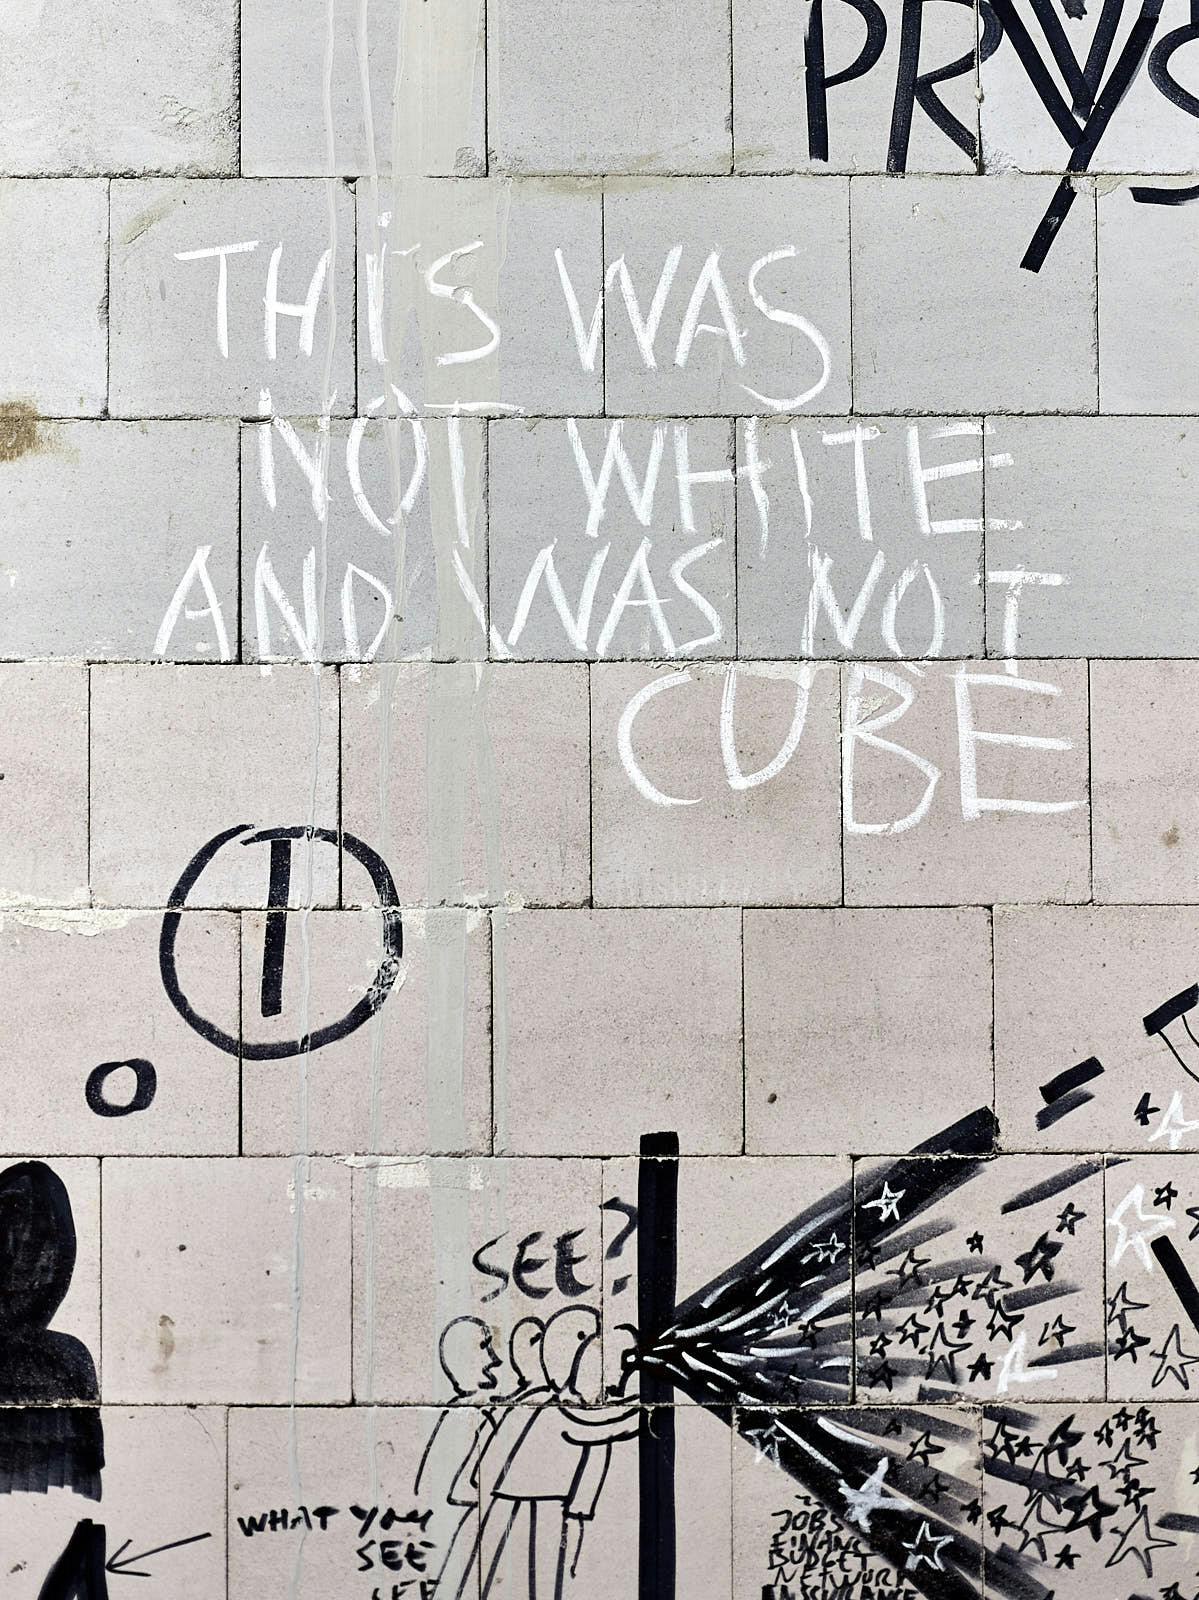 Foto: auf rohen, großen Betonwerksteinen sind schwarze Zeichnungen und die Worte This was not white and was not cube geschrieben.